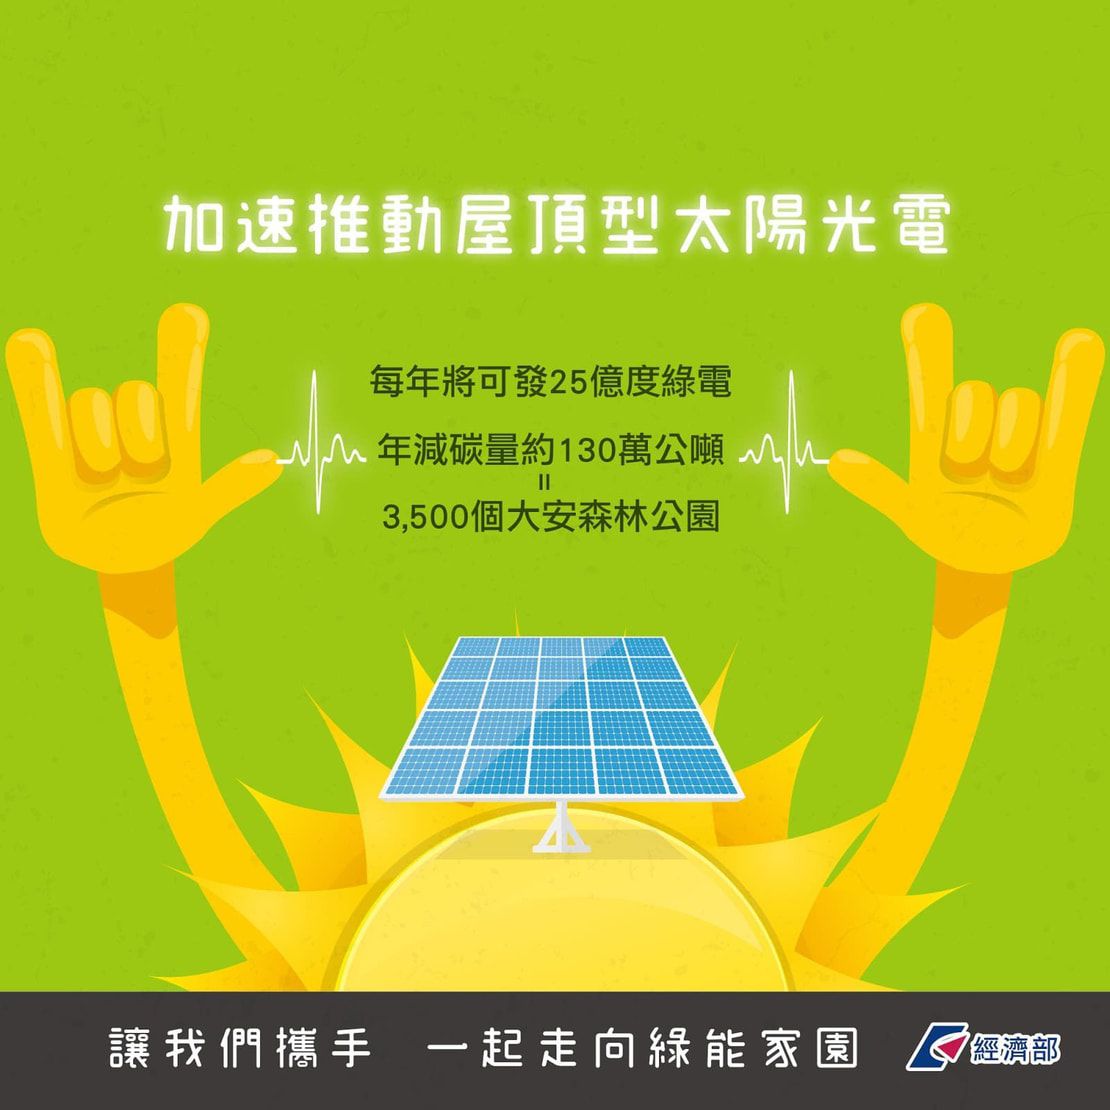 太陽能屋頂全民參與-加速推動屋頂型太陽光電